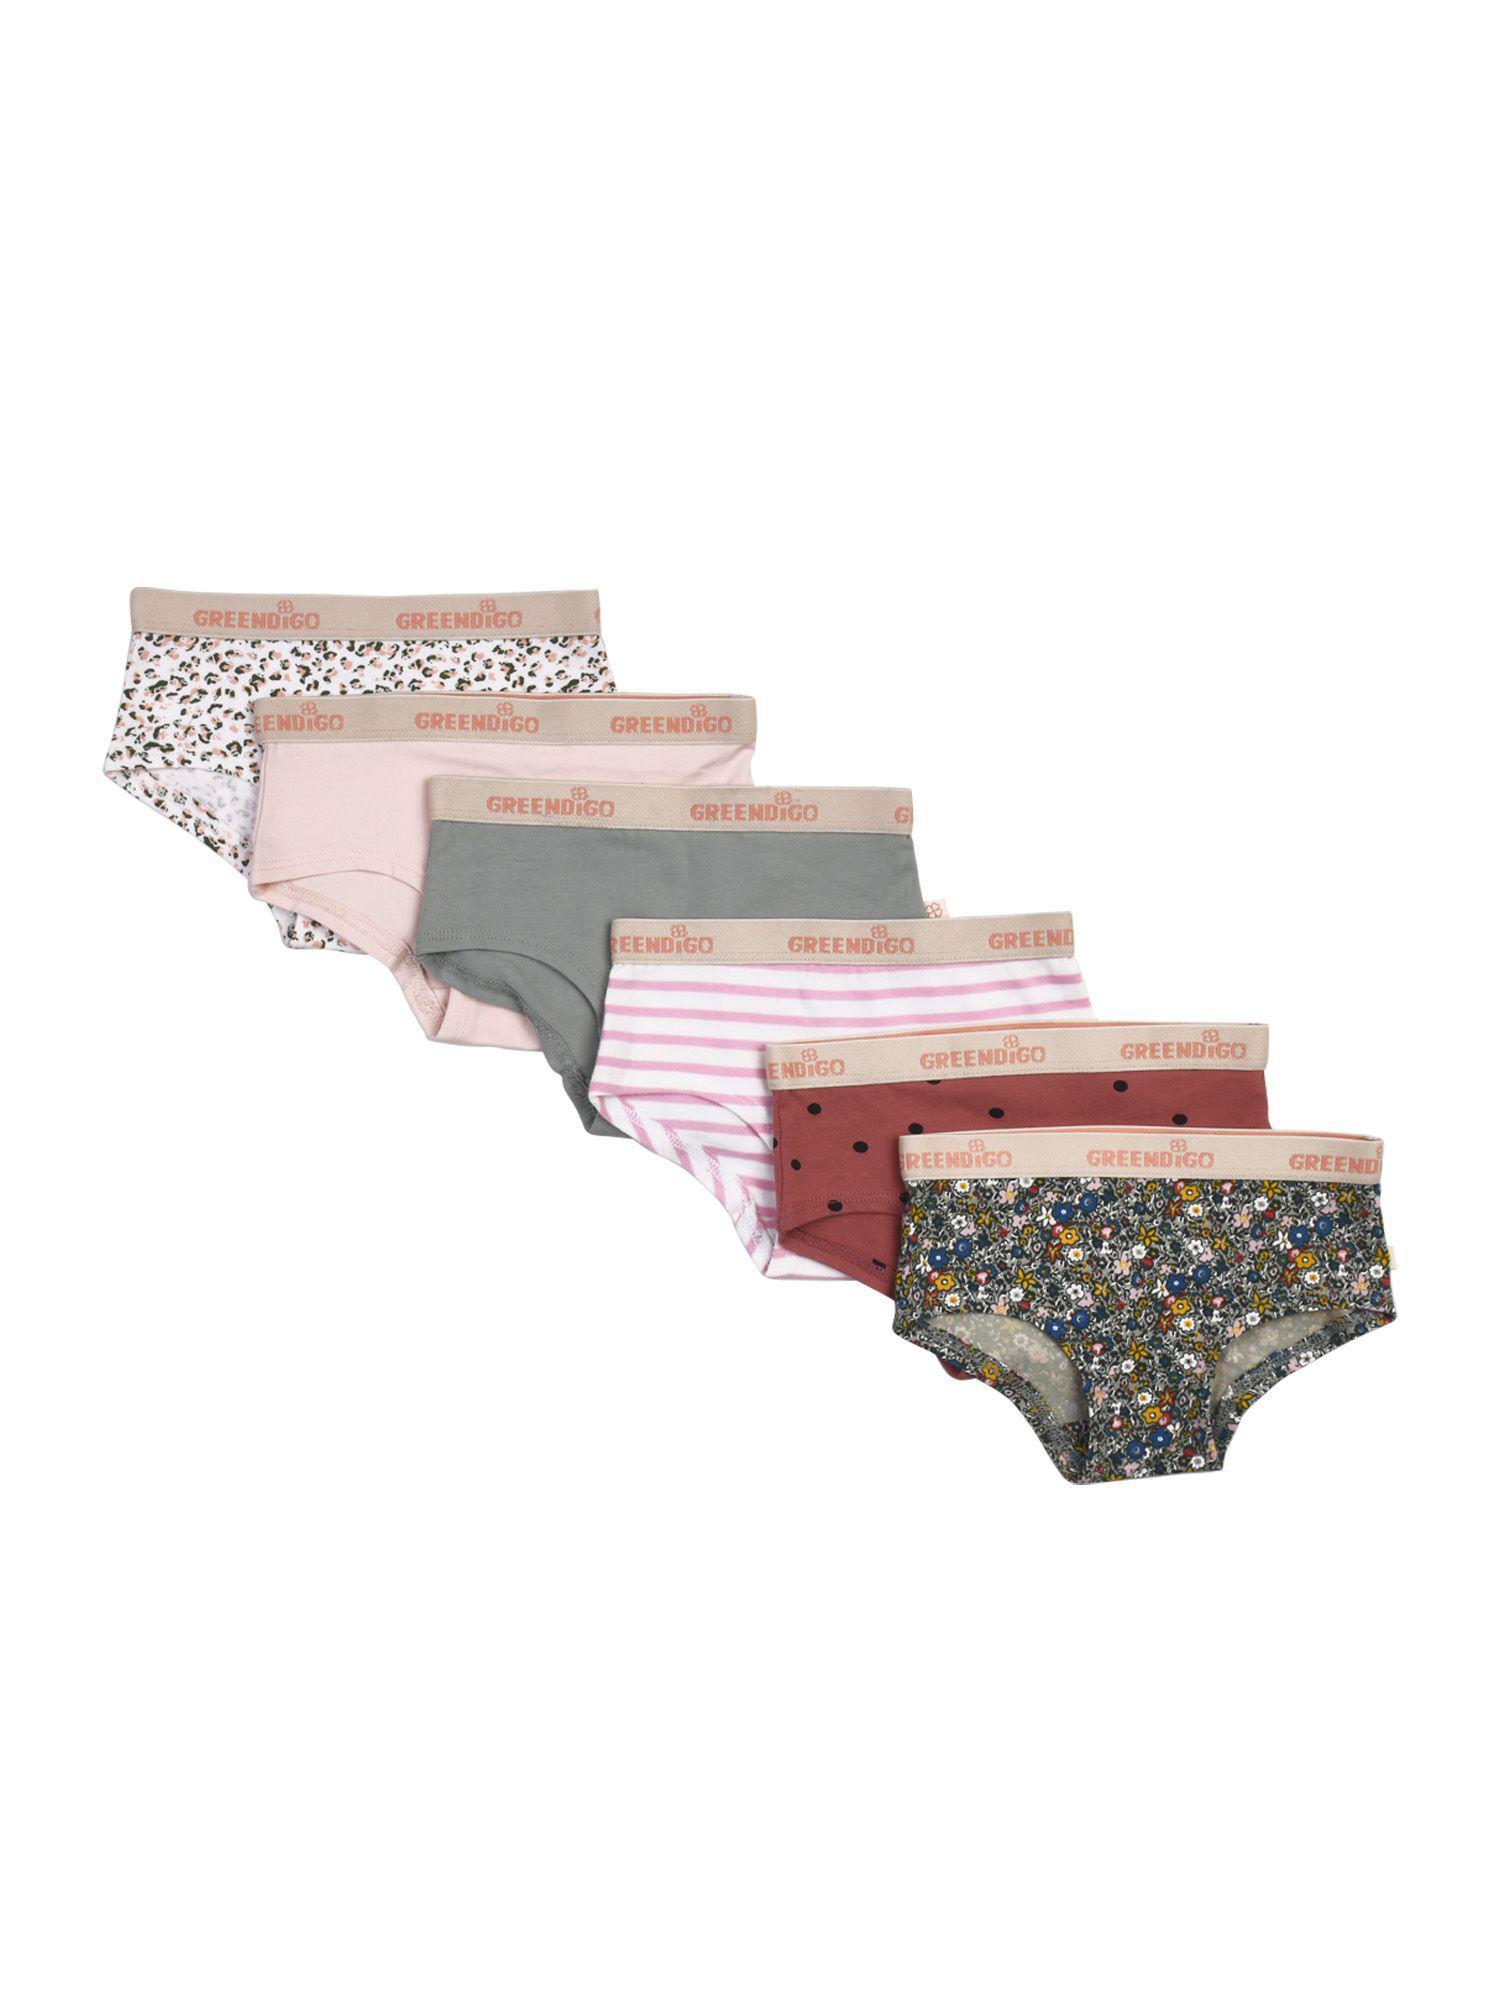 organic-cotton-girls-printed-panties-(pack-of-6)